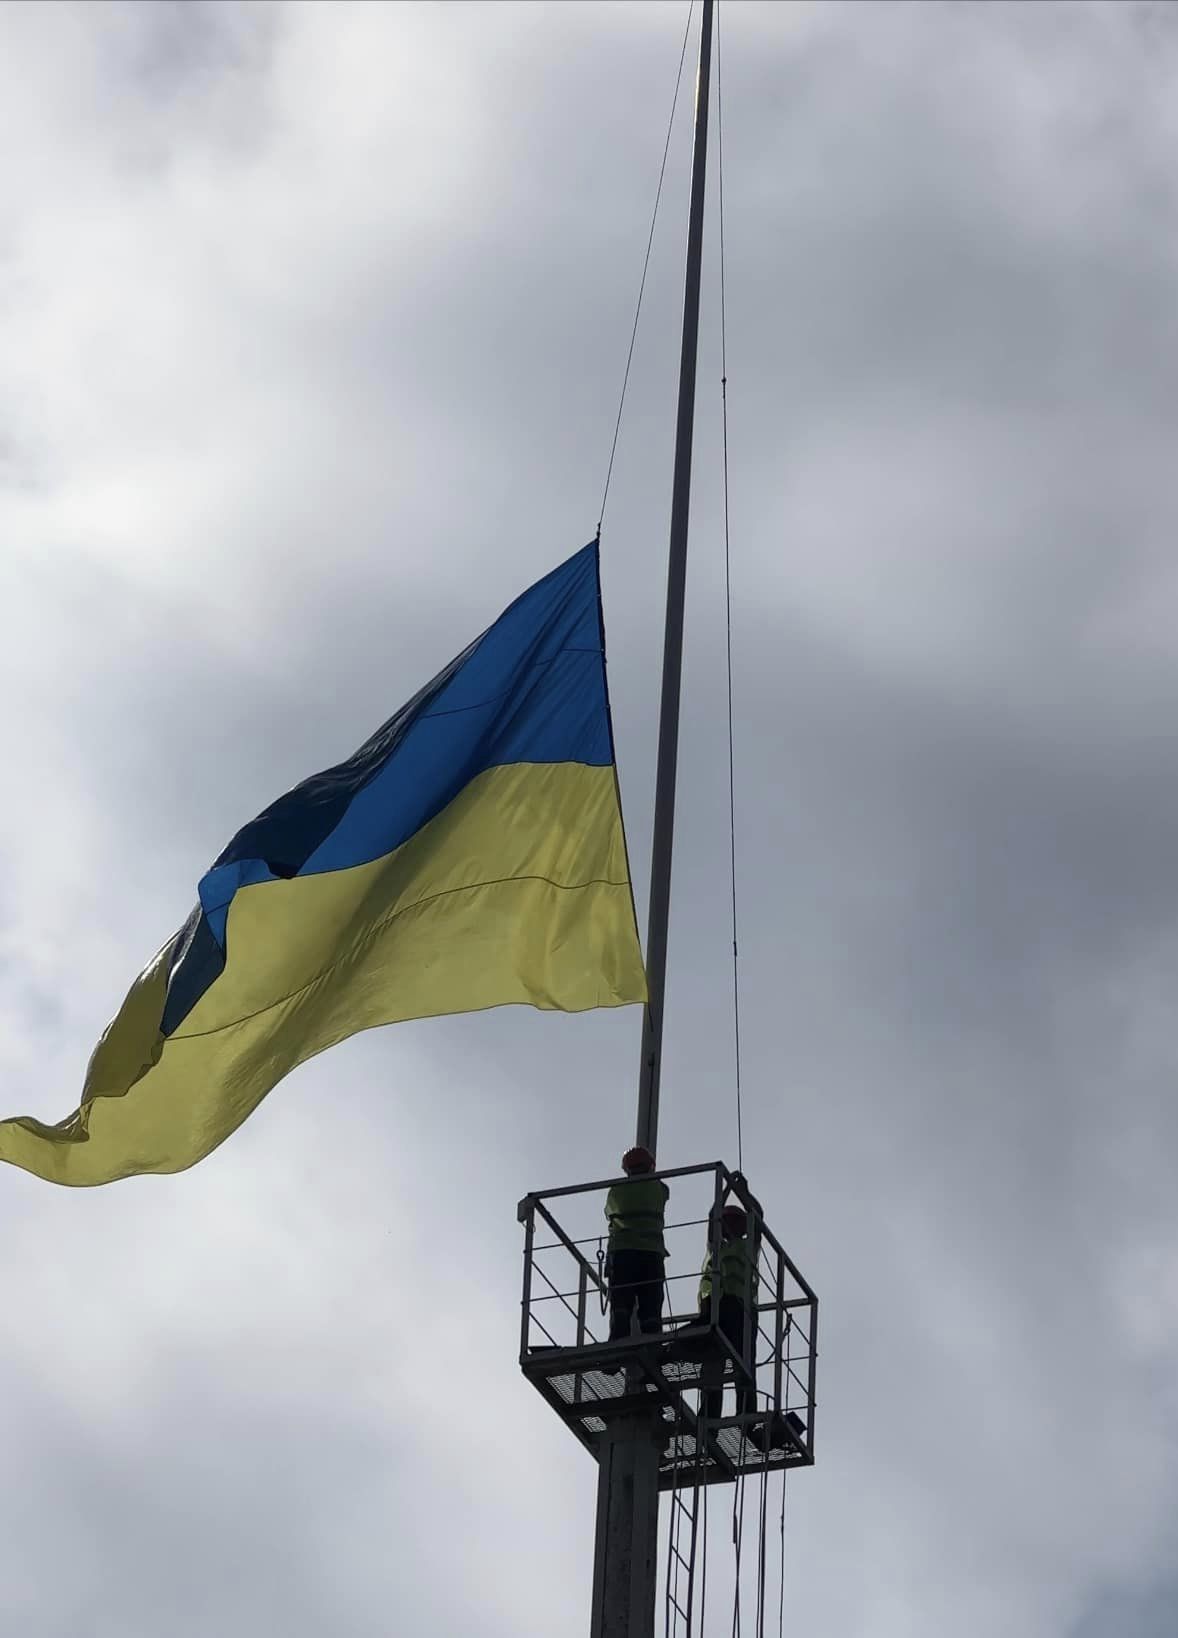 Відбулись урочистості з нагоди Дня Державного Прапора України